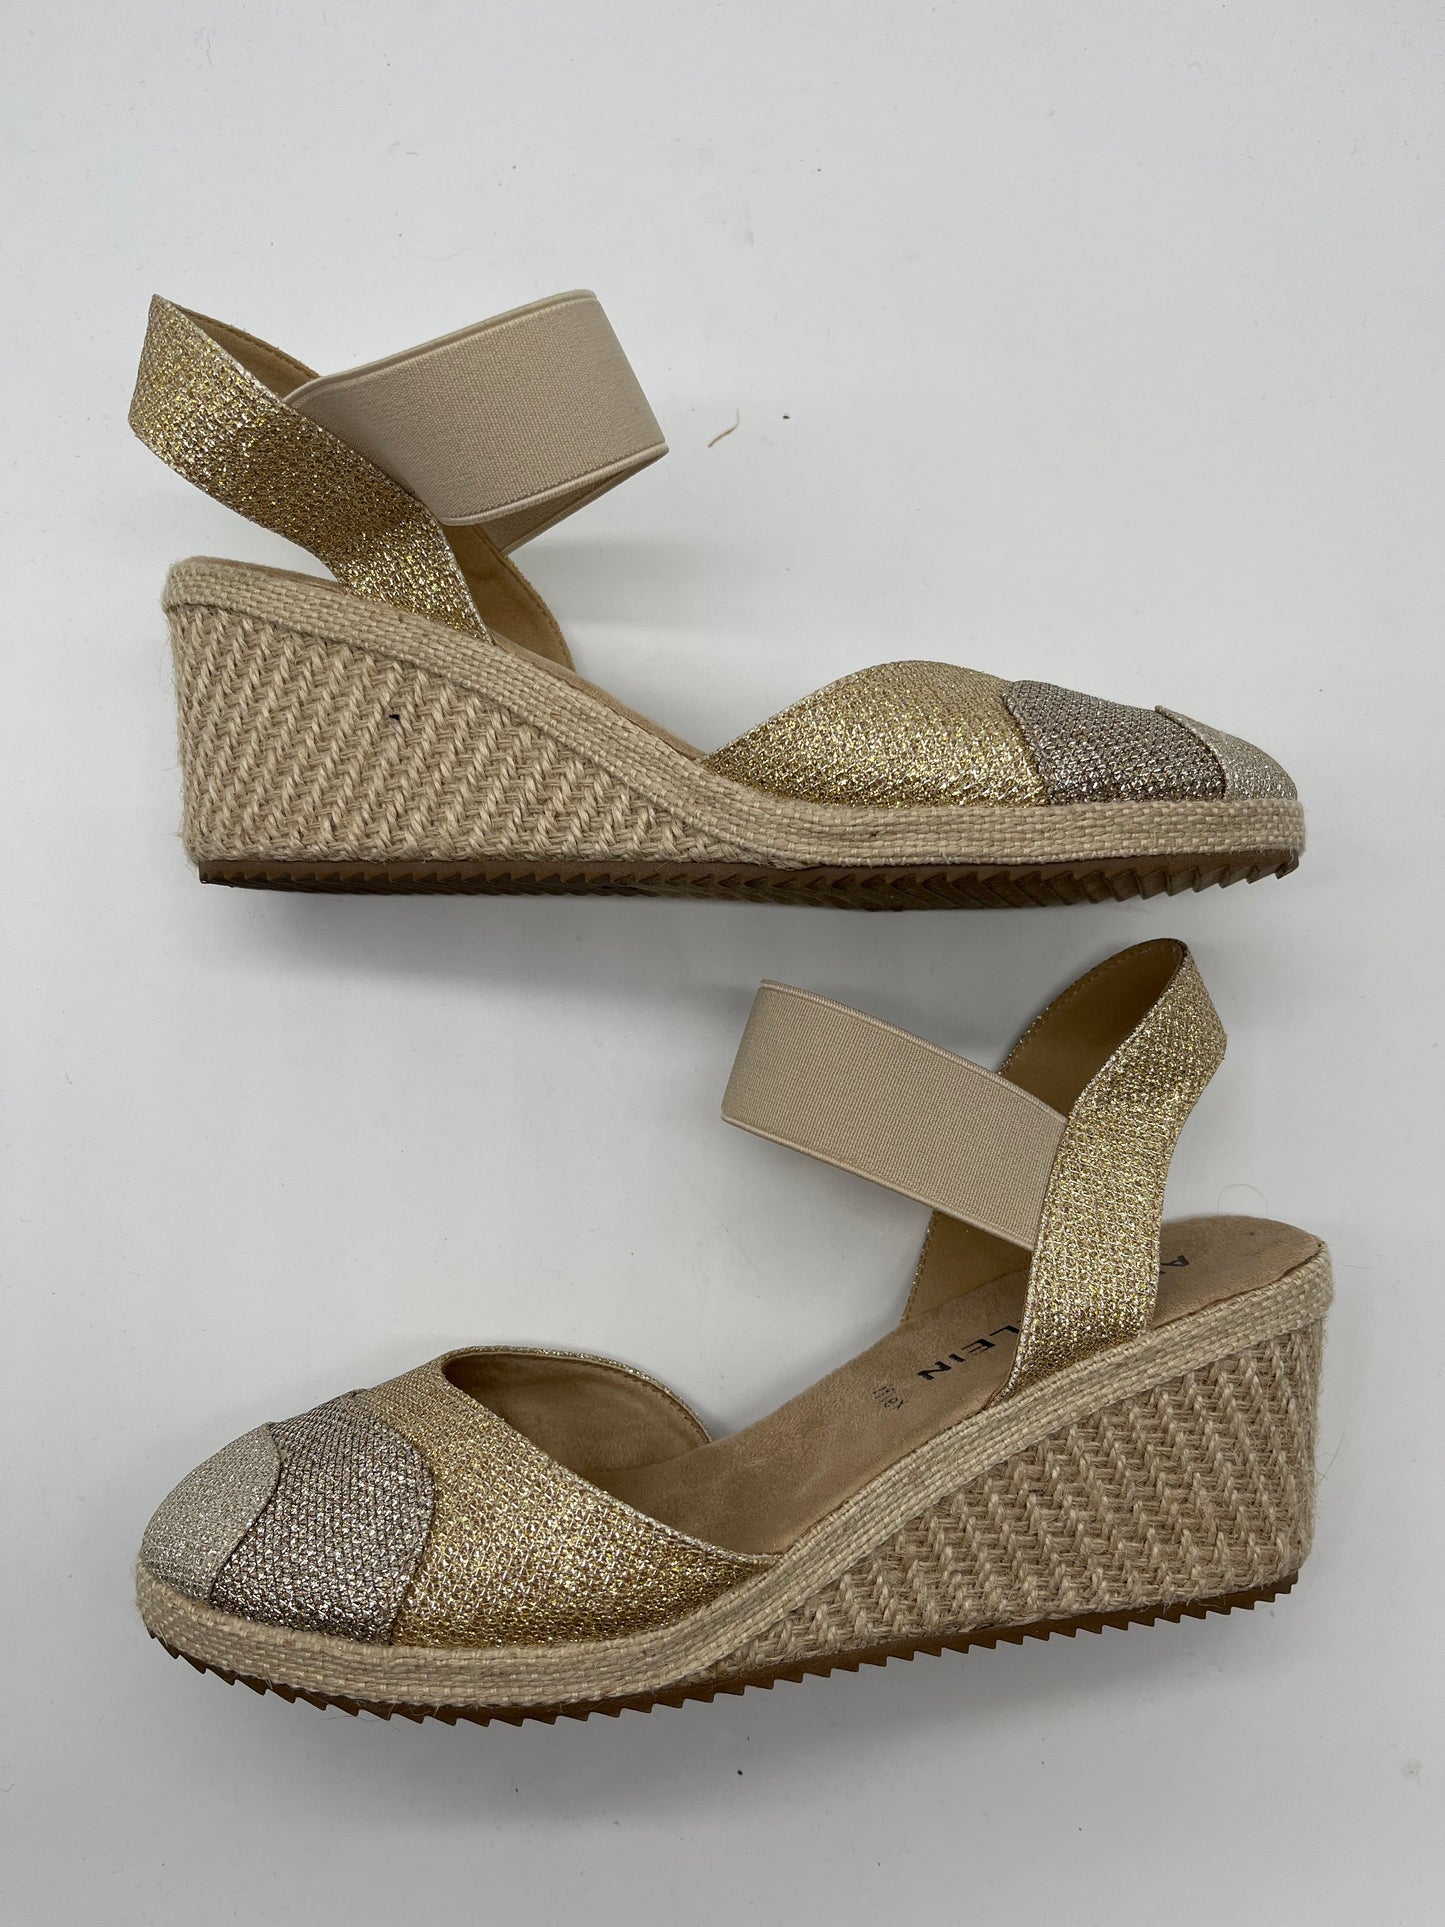 Gold Sandals Heels Wedge Anne Klein, Size 8